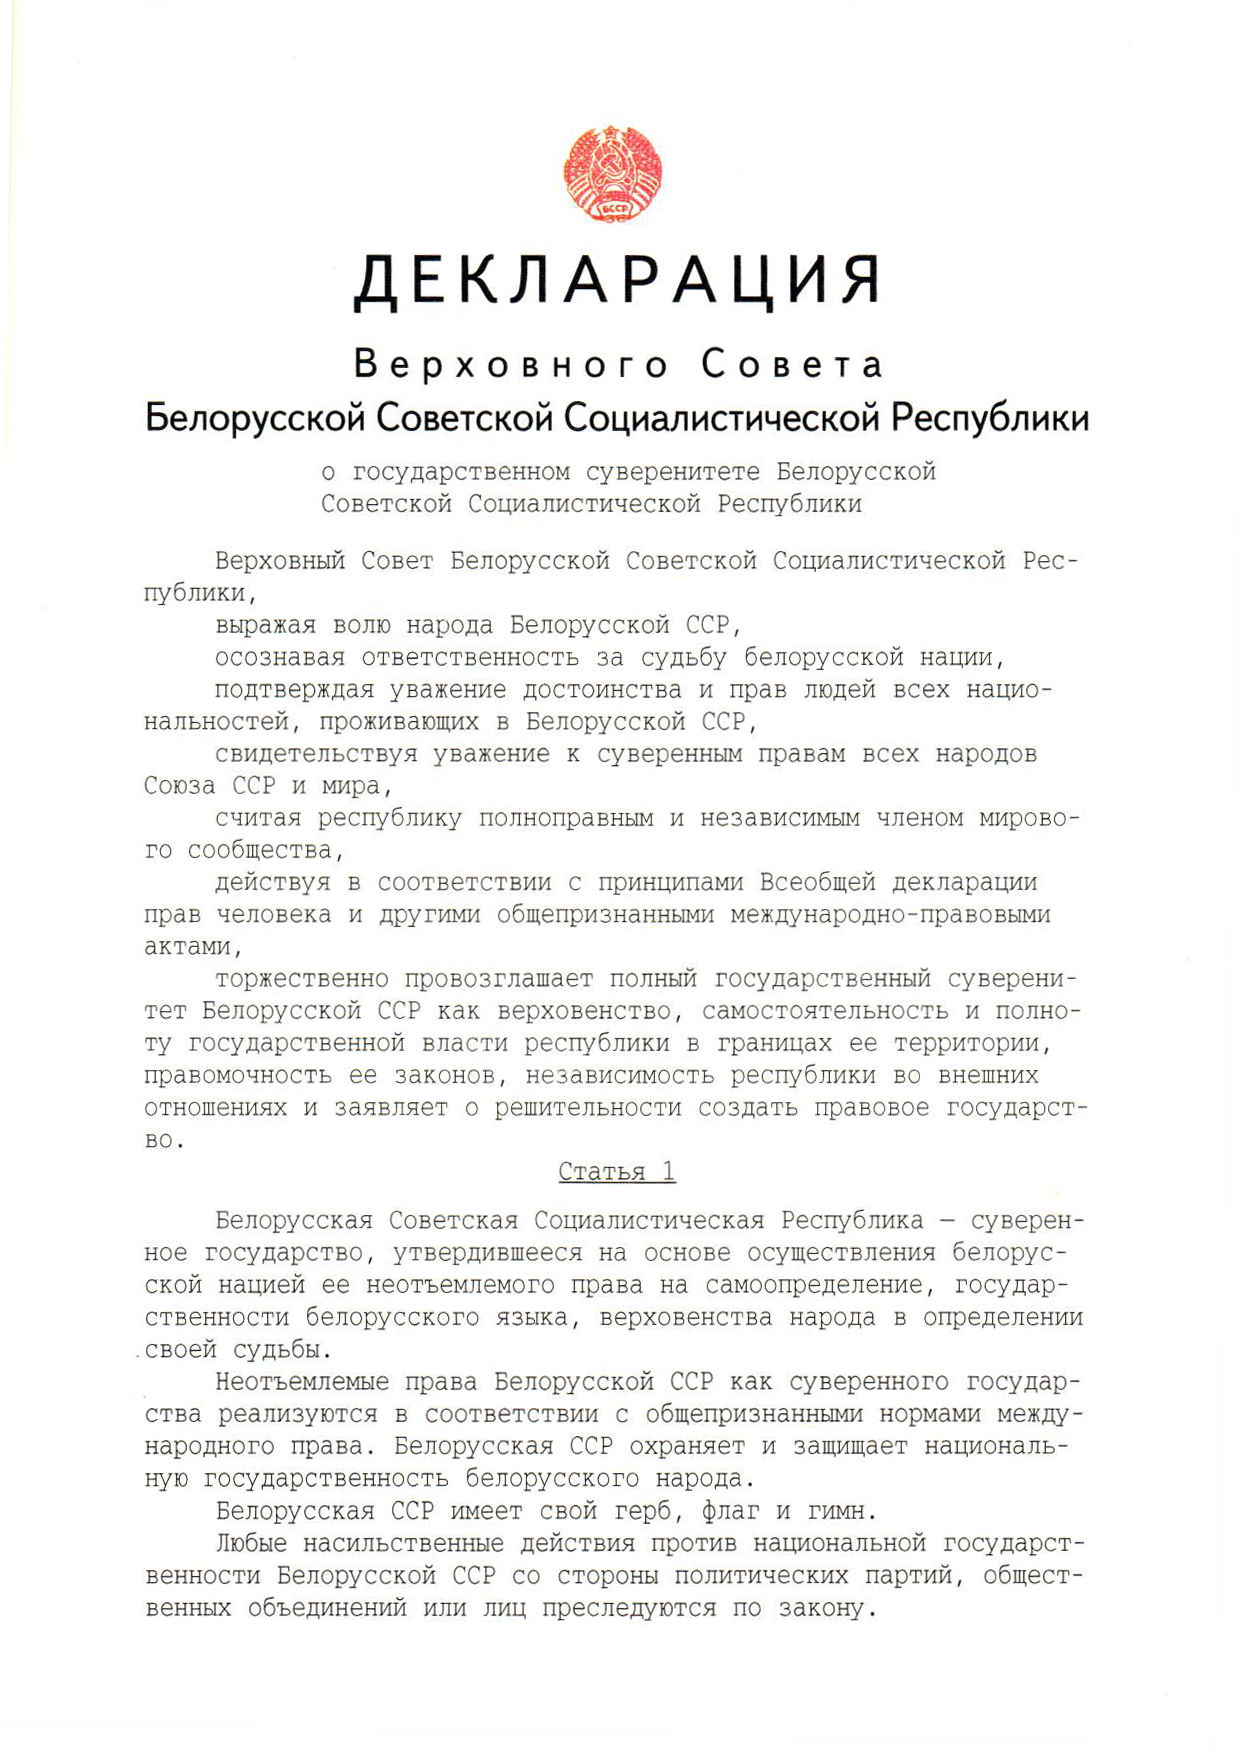 29 лет назад была принята Декларация о государственном суверенитете Беларуси